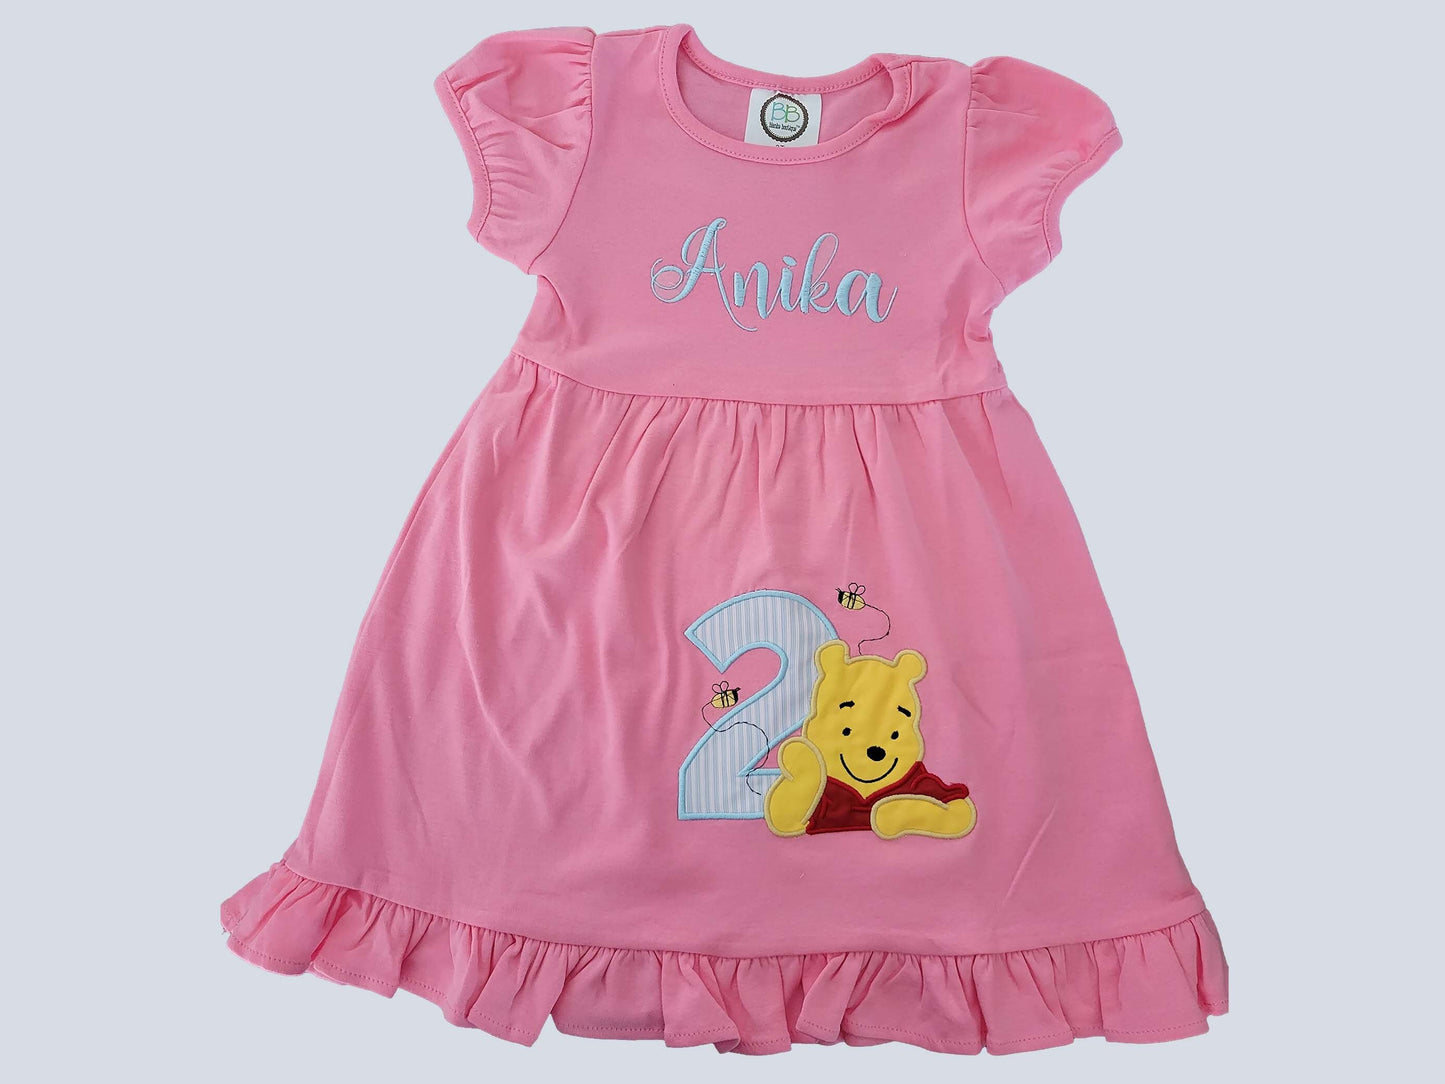 Winnie the Pooh dress pink